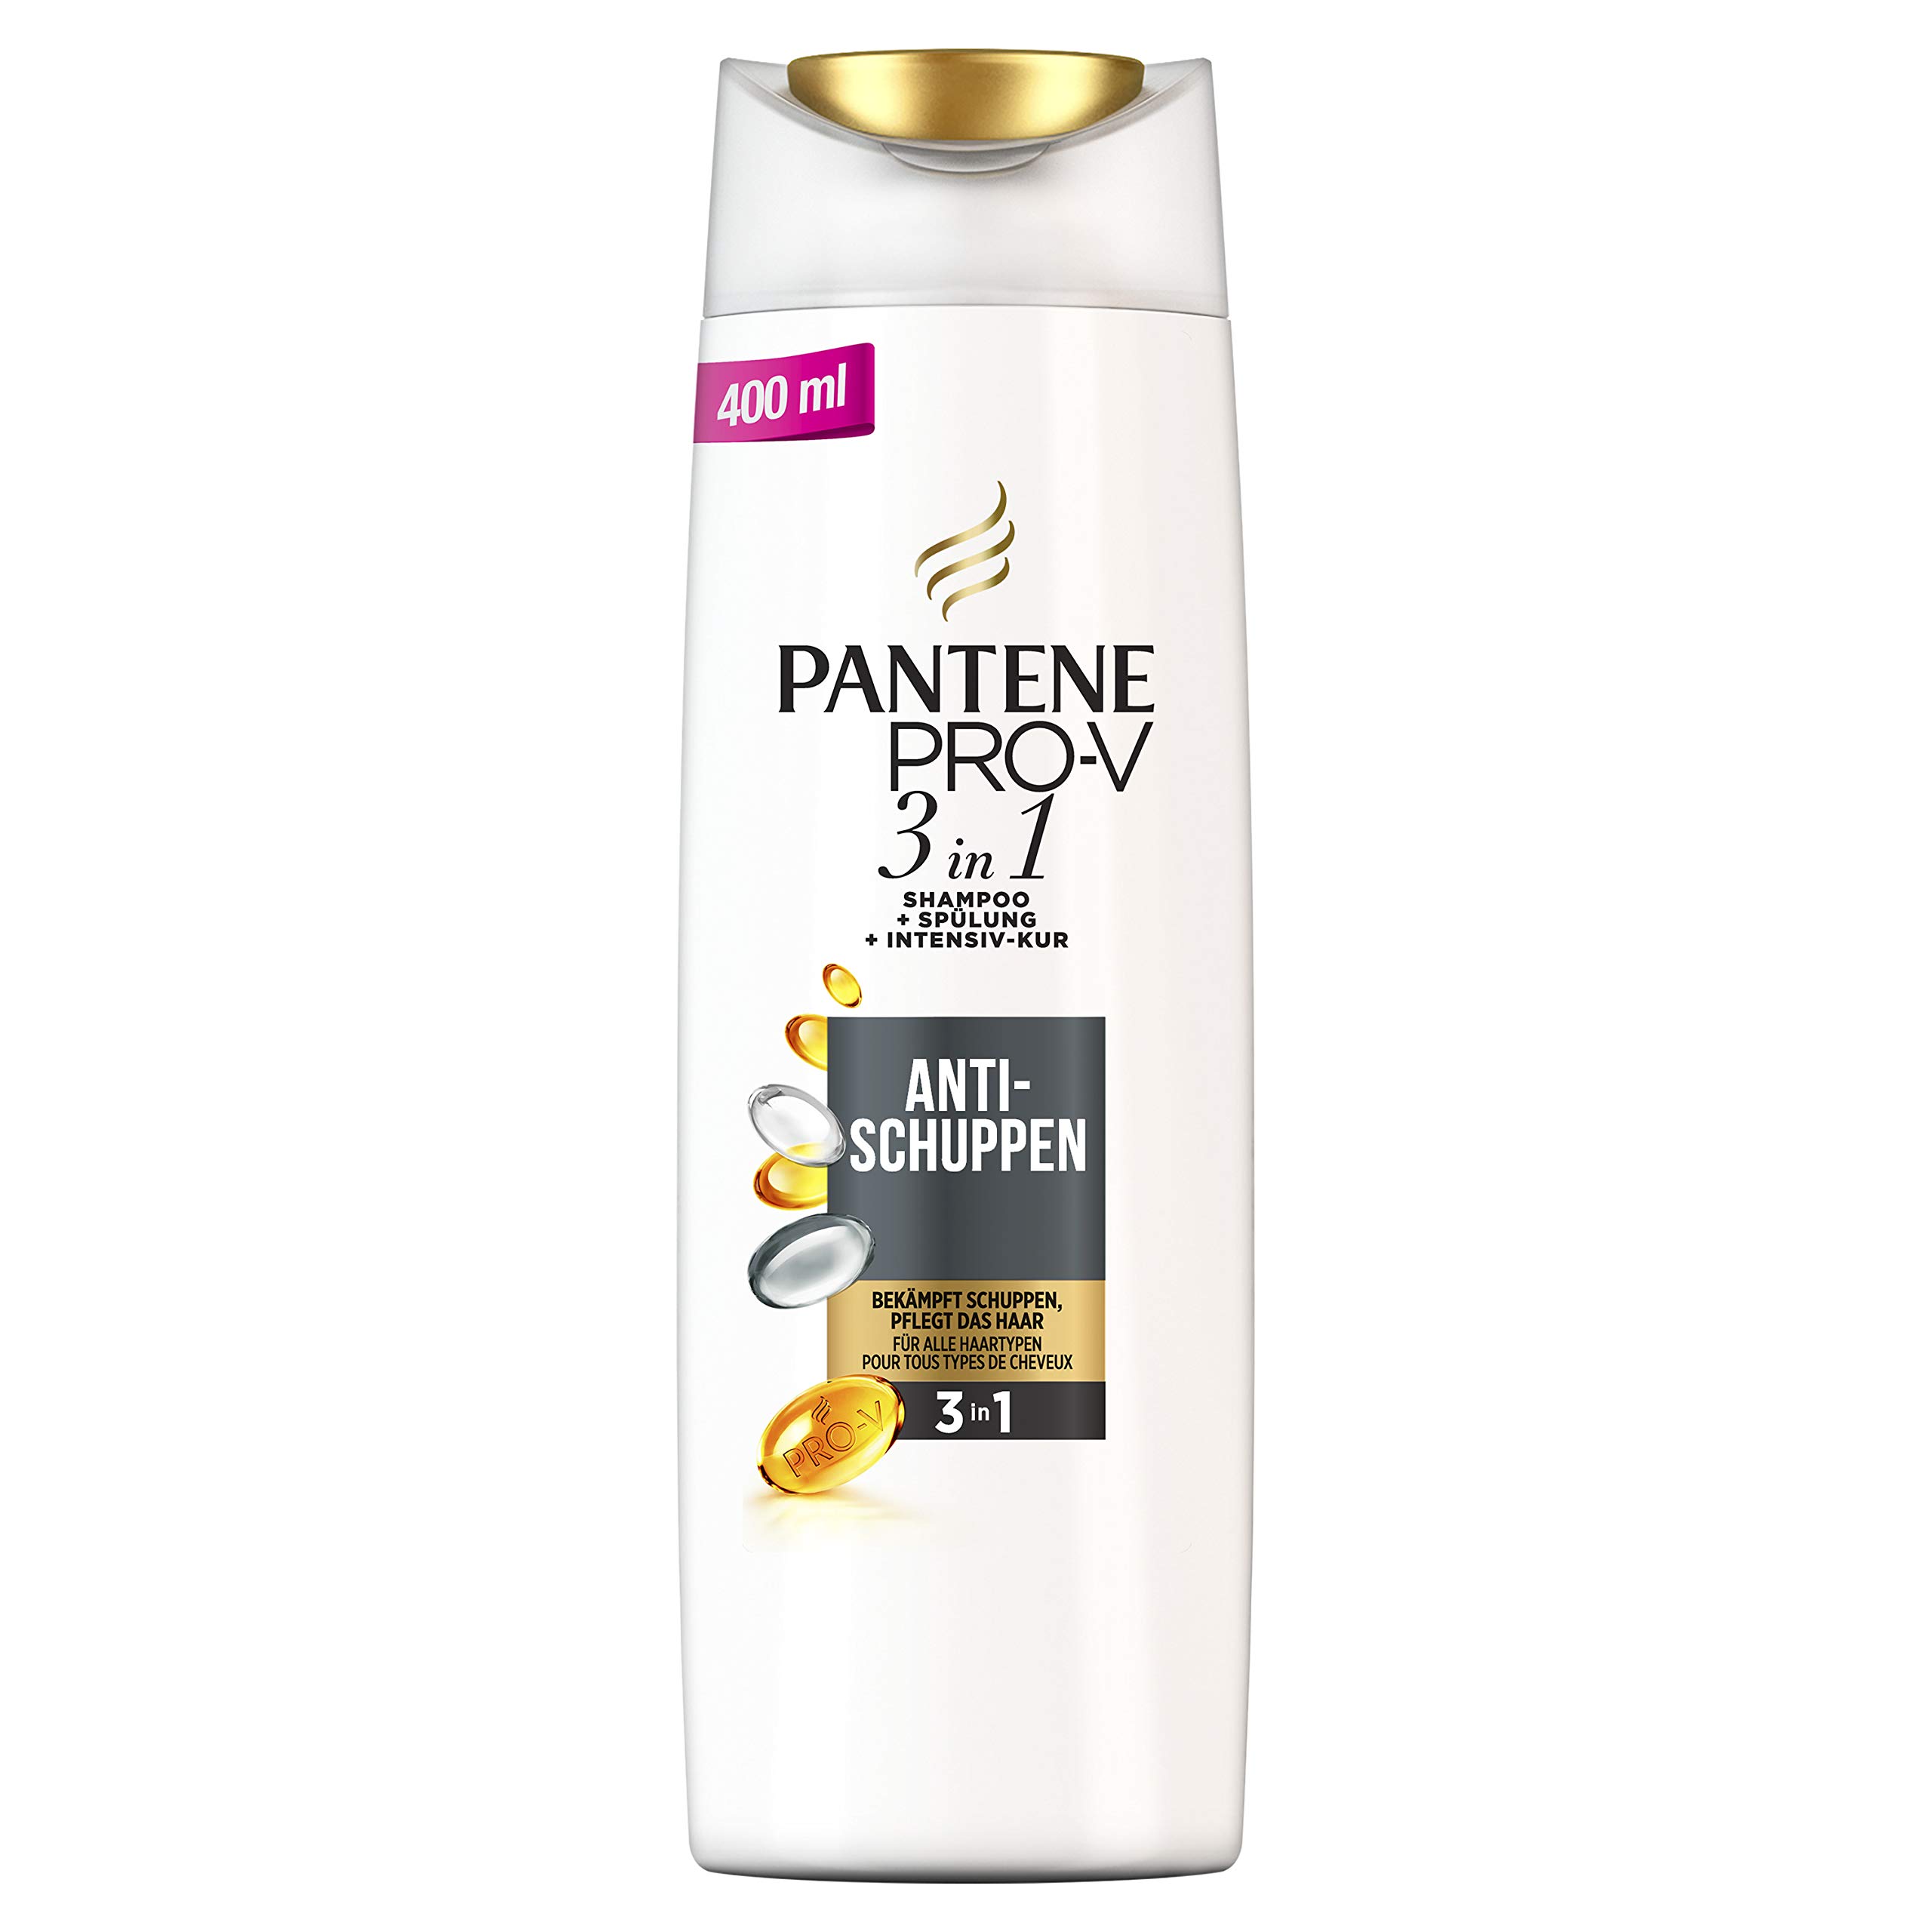 pantene pro-v 3w1 szampon przeciwłupieżowy